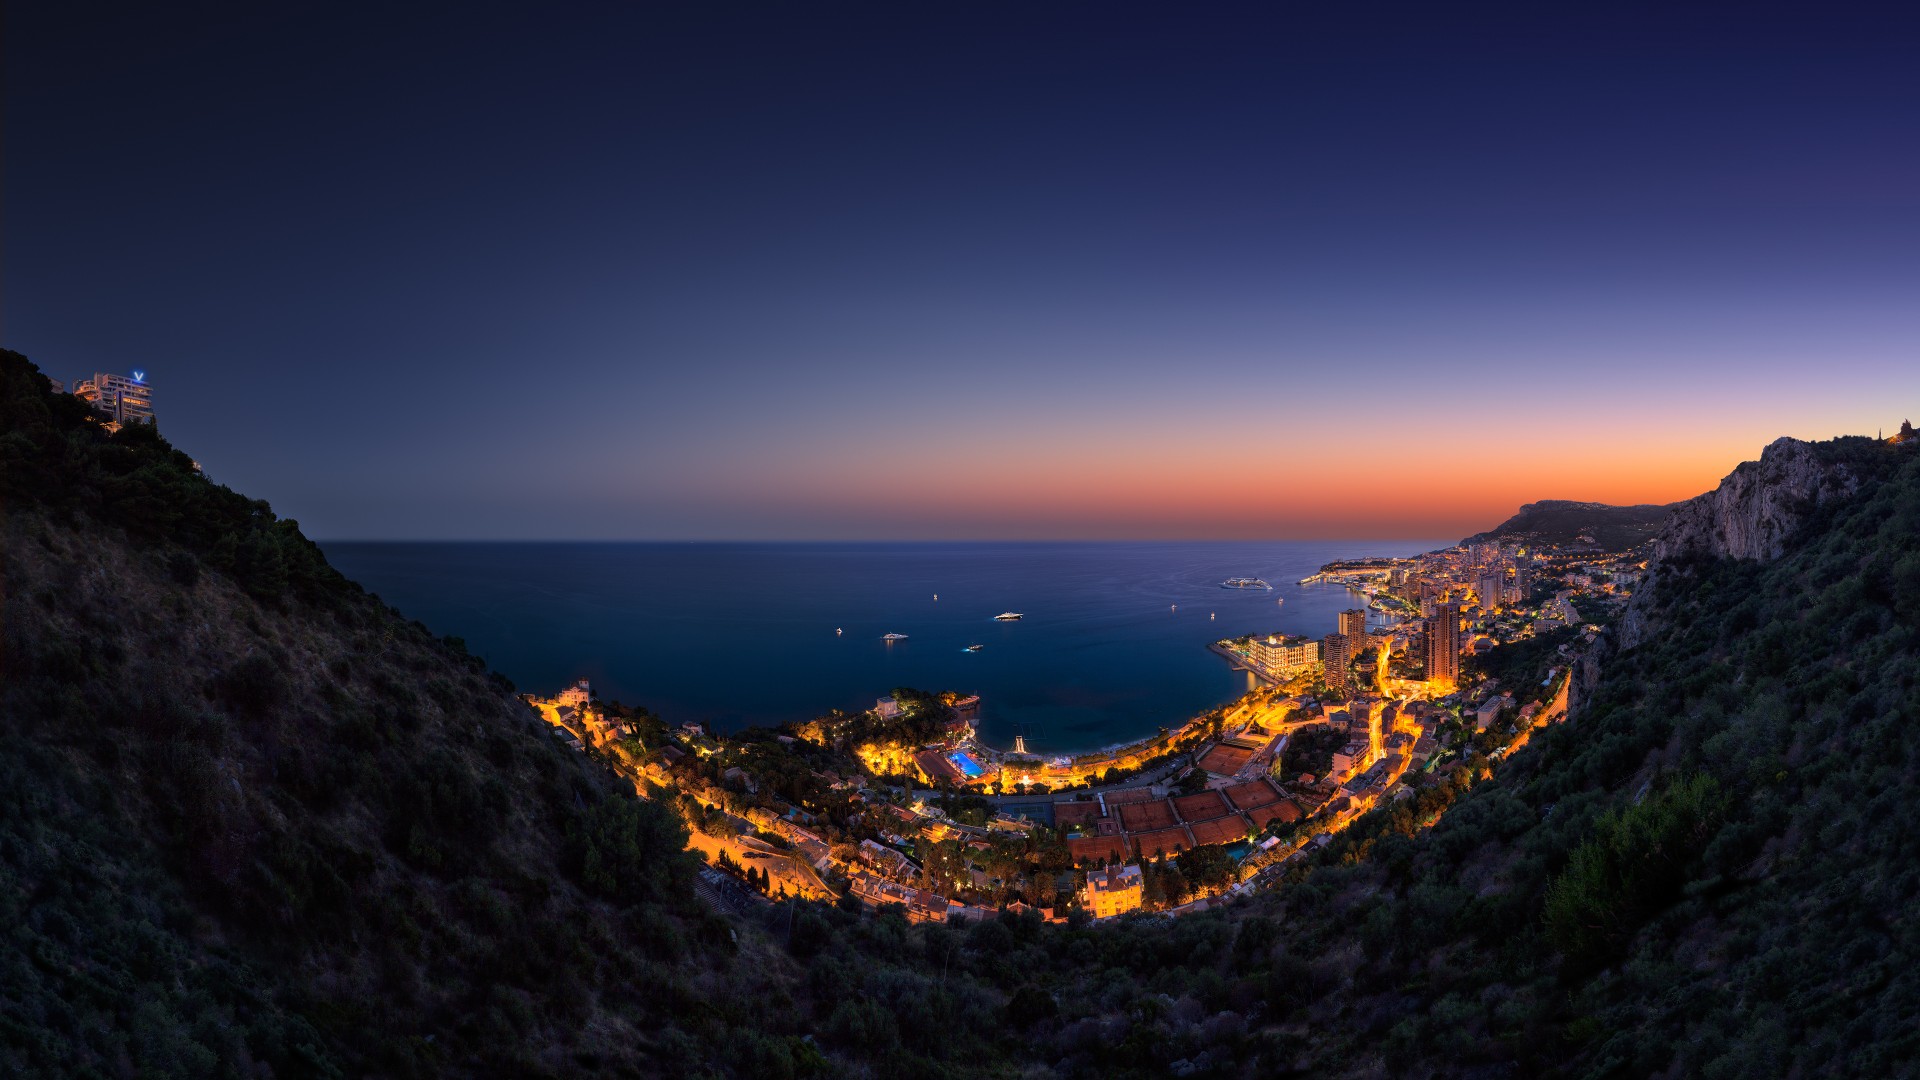 Principality, Monaco, Vista Palace Hotel, twilight, night, sky, light, boats, travel, vacation, booking, sea, ocean (horizontal)